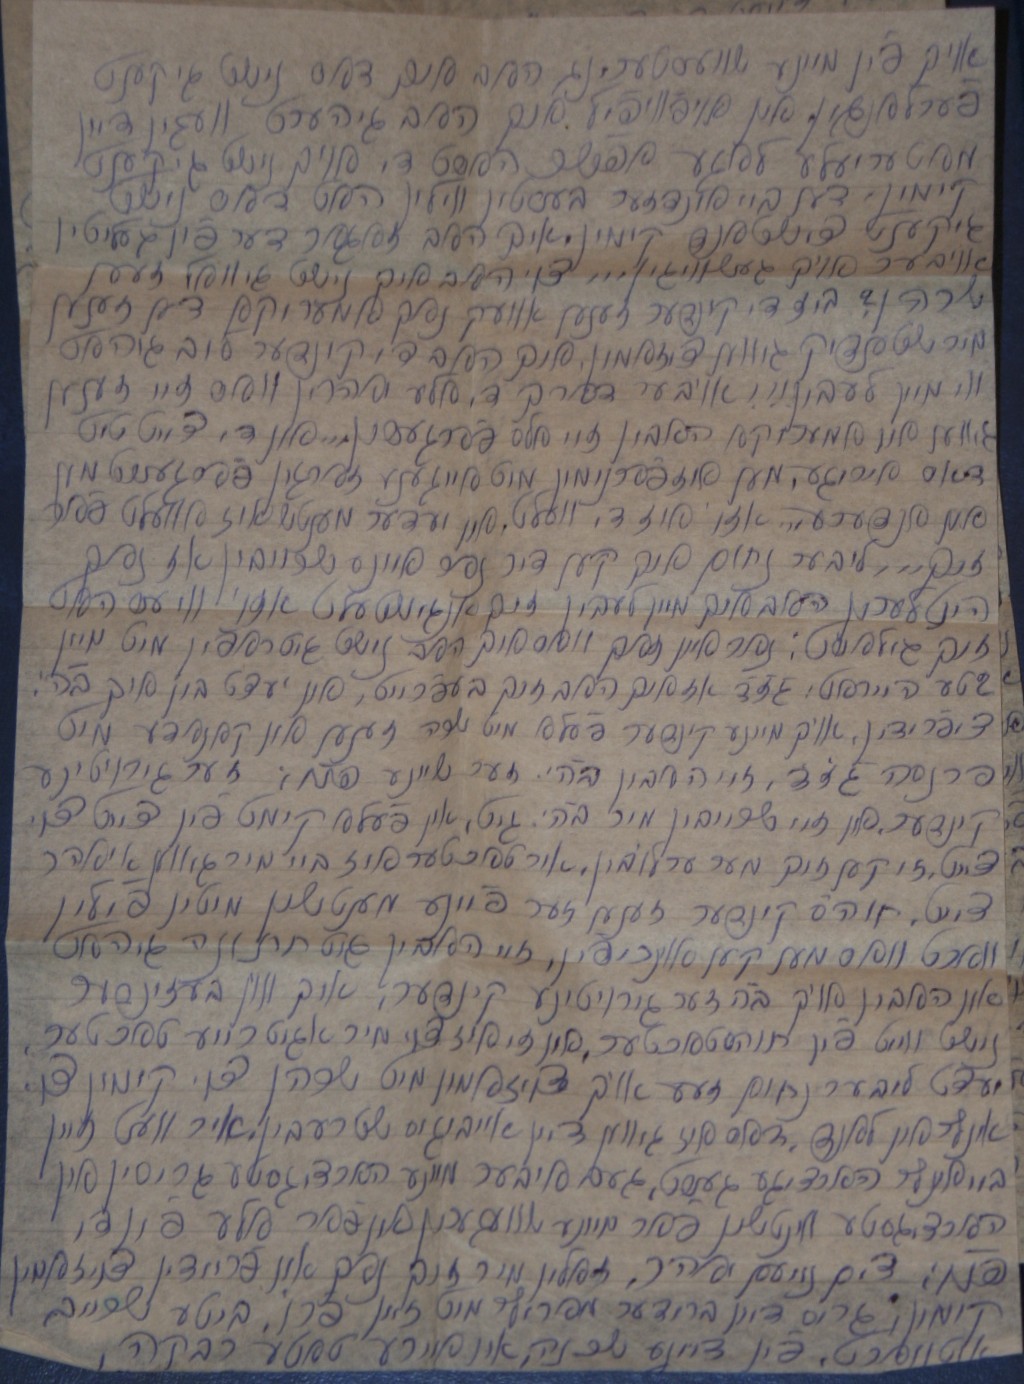 Rywka's letter p.2